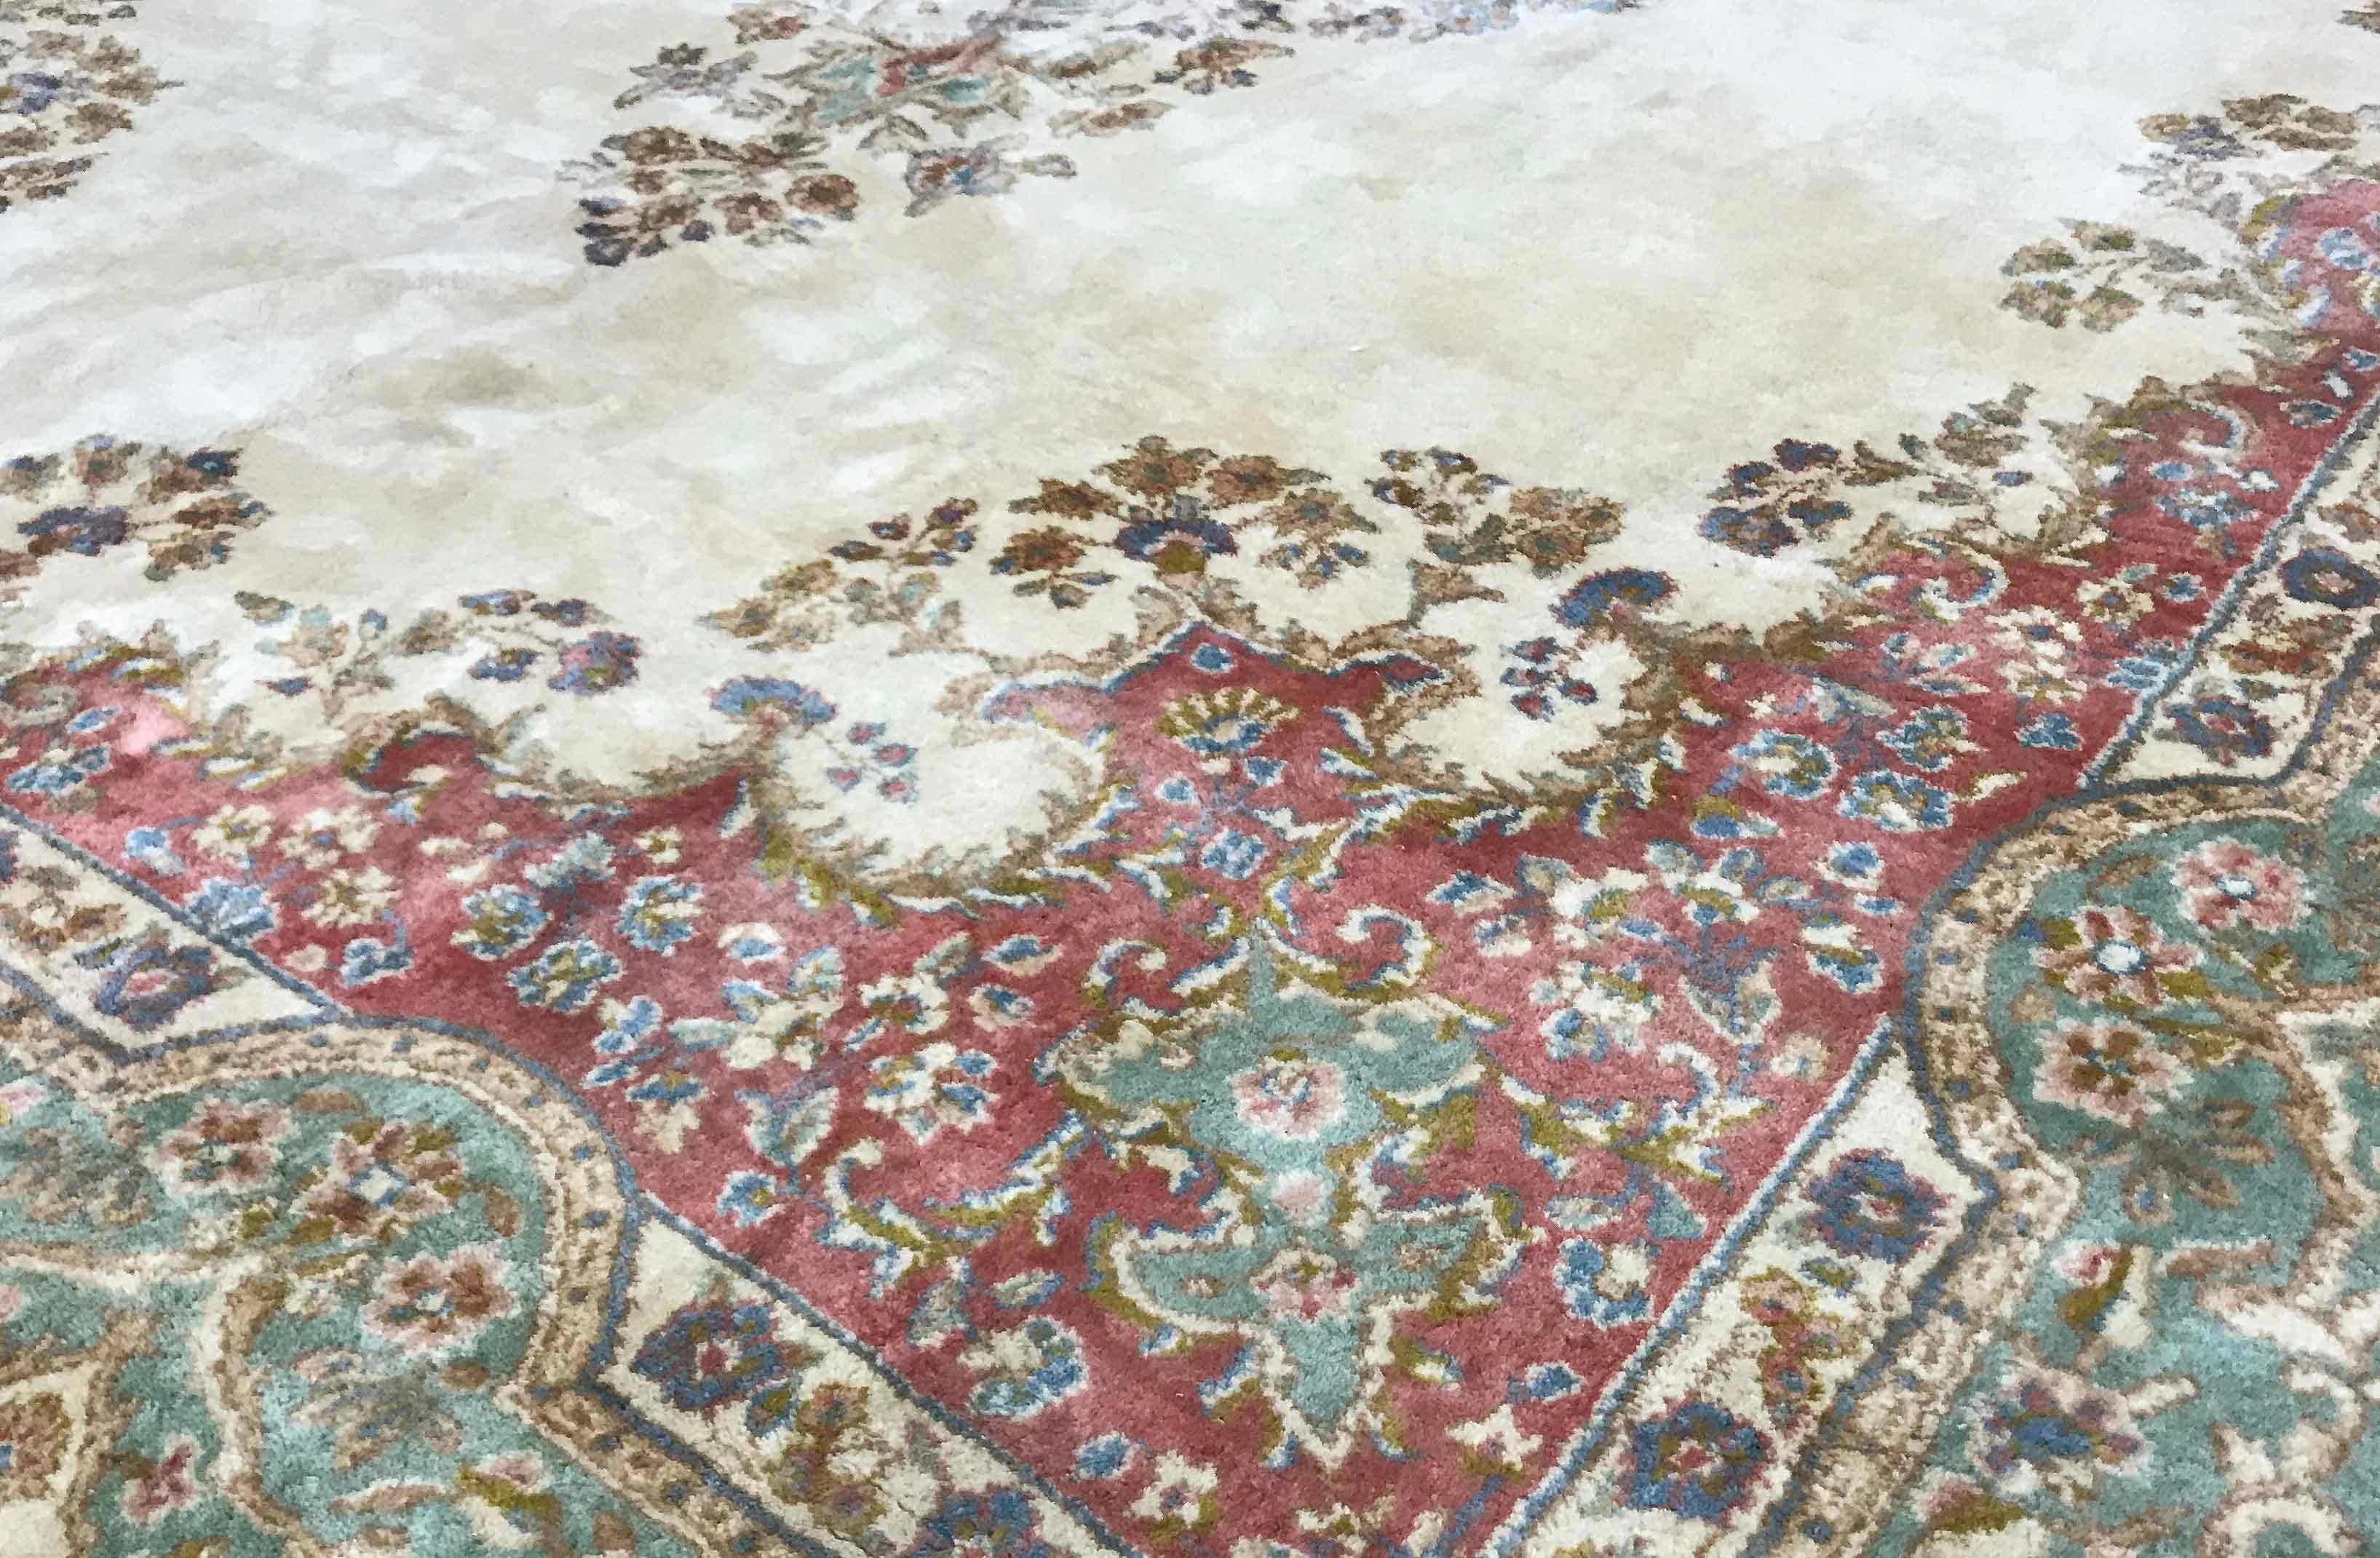 Tapis persan Kerman vintage, circa 1940. Les tapis Kerman, les plus imaginatifs de tous les tapis urbains persans anciens. La ville de Kerman est le siège de la province de Kerman, dans le sud-est de la Perse, et se situe à une altitude de 2000